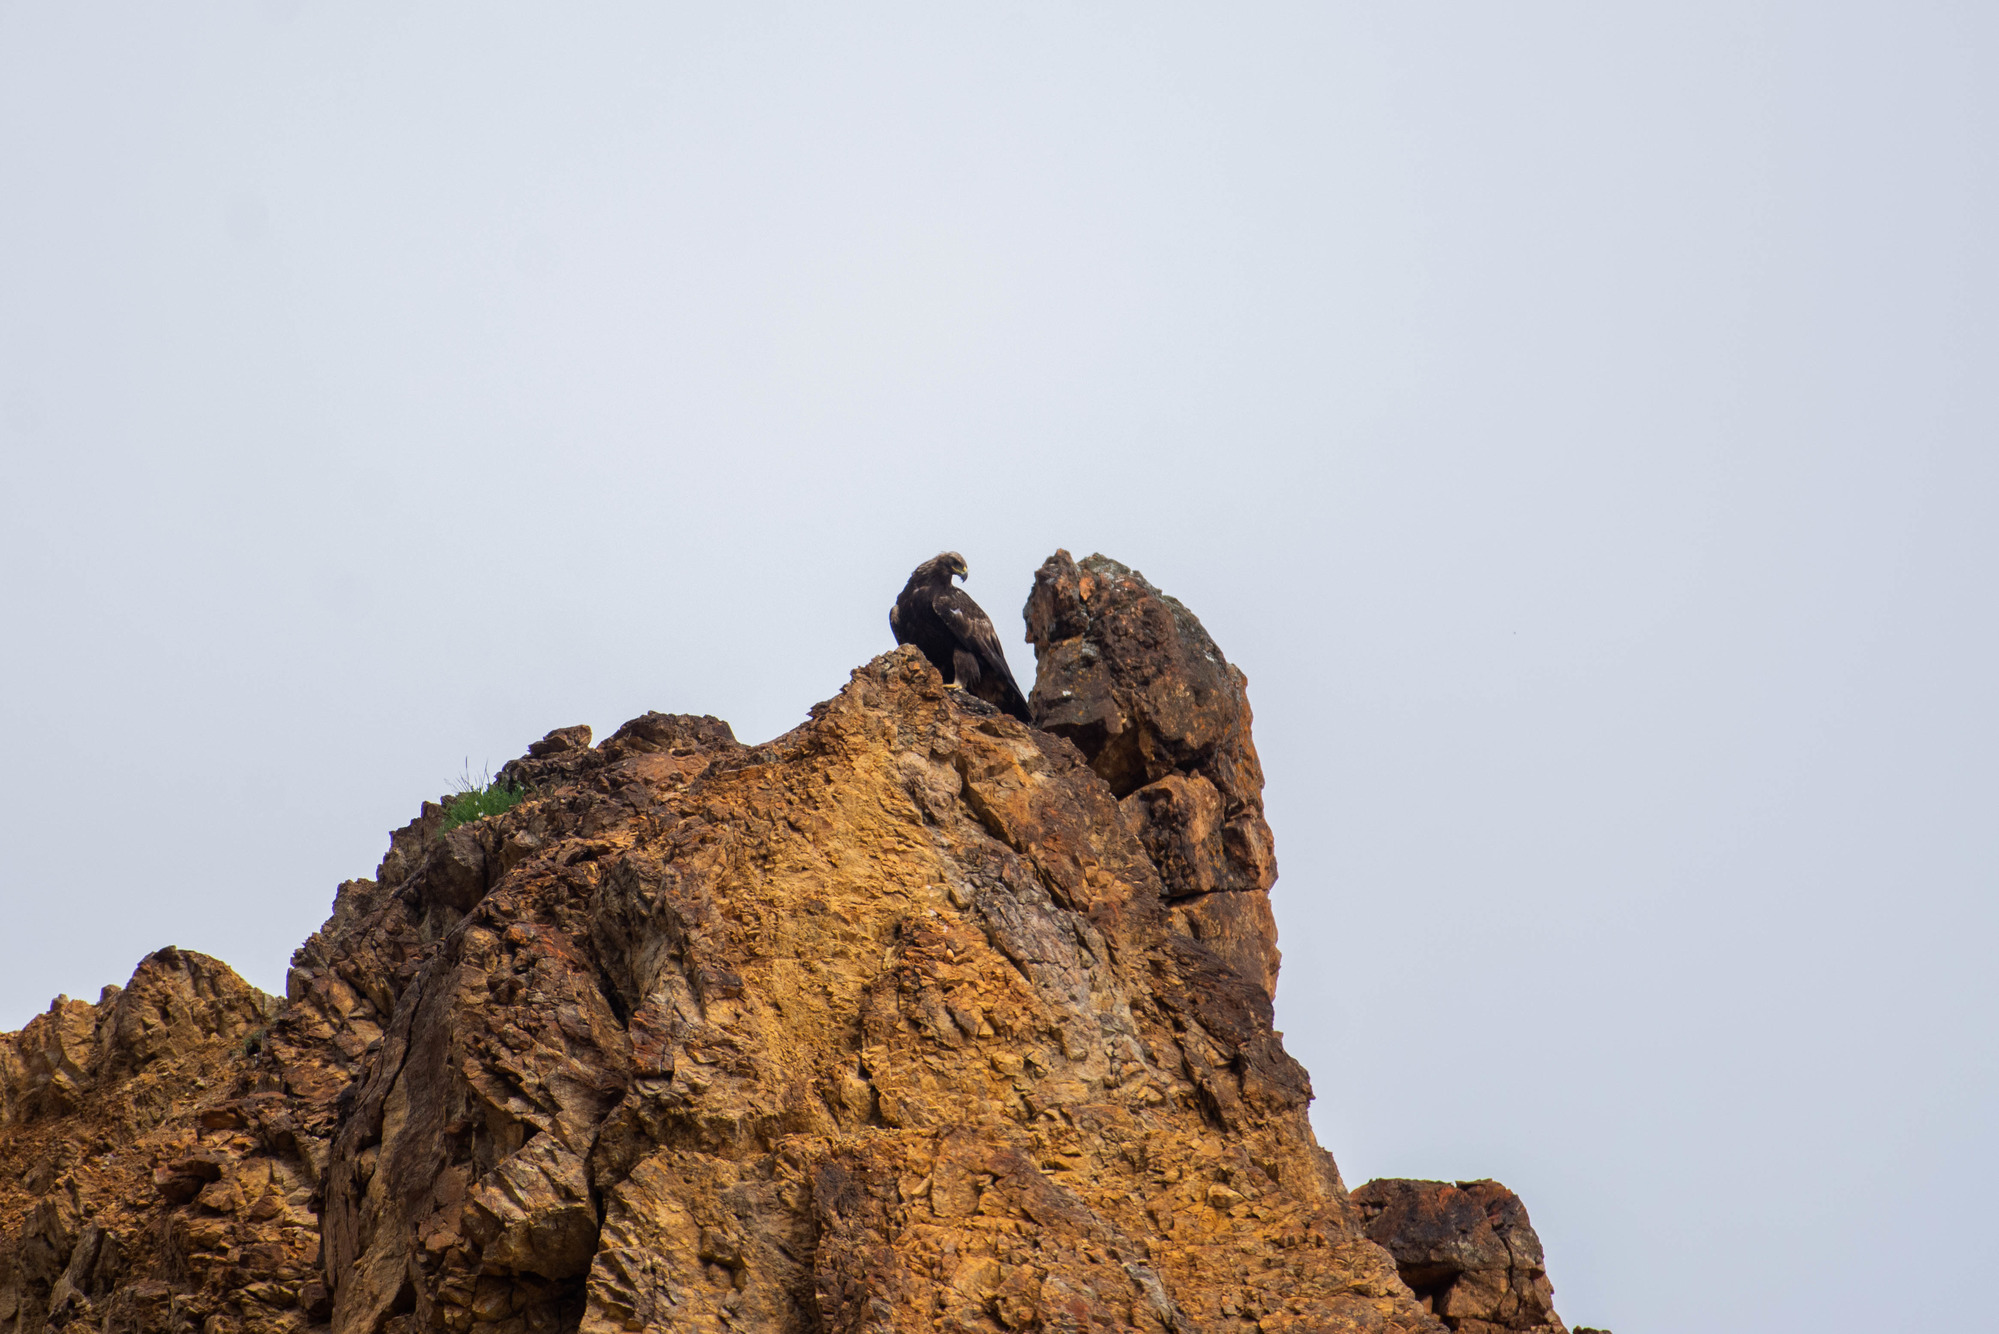 A golden eagle perched atop a rocky outcropping